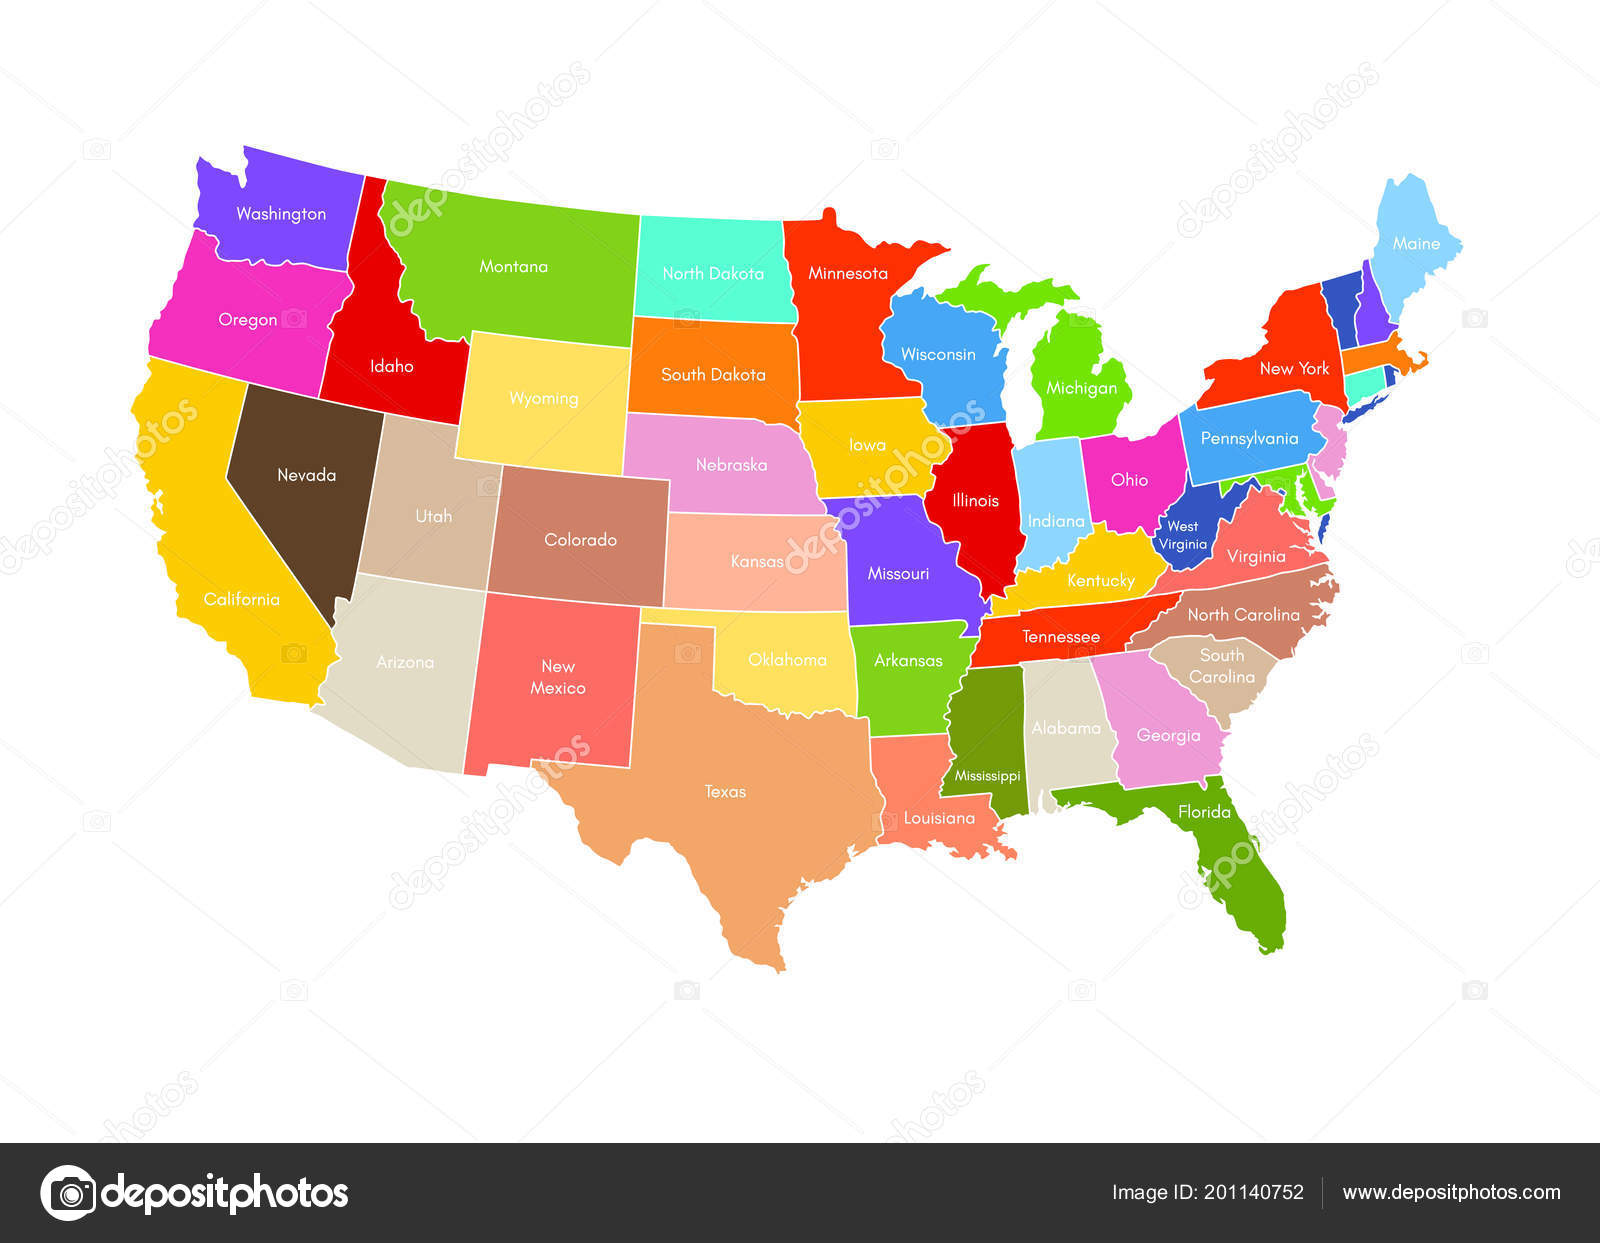 Hãy cùng chiêm ngưỡng bản đồ Mỹ trên nền trắng đầy tinh tế và sinh động. Đây chắc chắn là một bản đồ đẹp như mơ, giúp bạn nhanh chóng tìm hiểu về lịch sử và địa lý của nước Mỹ.